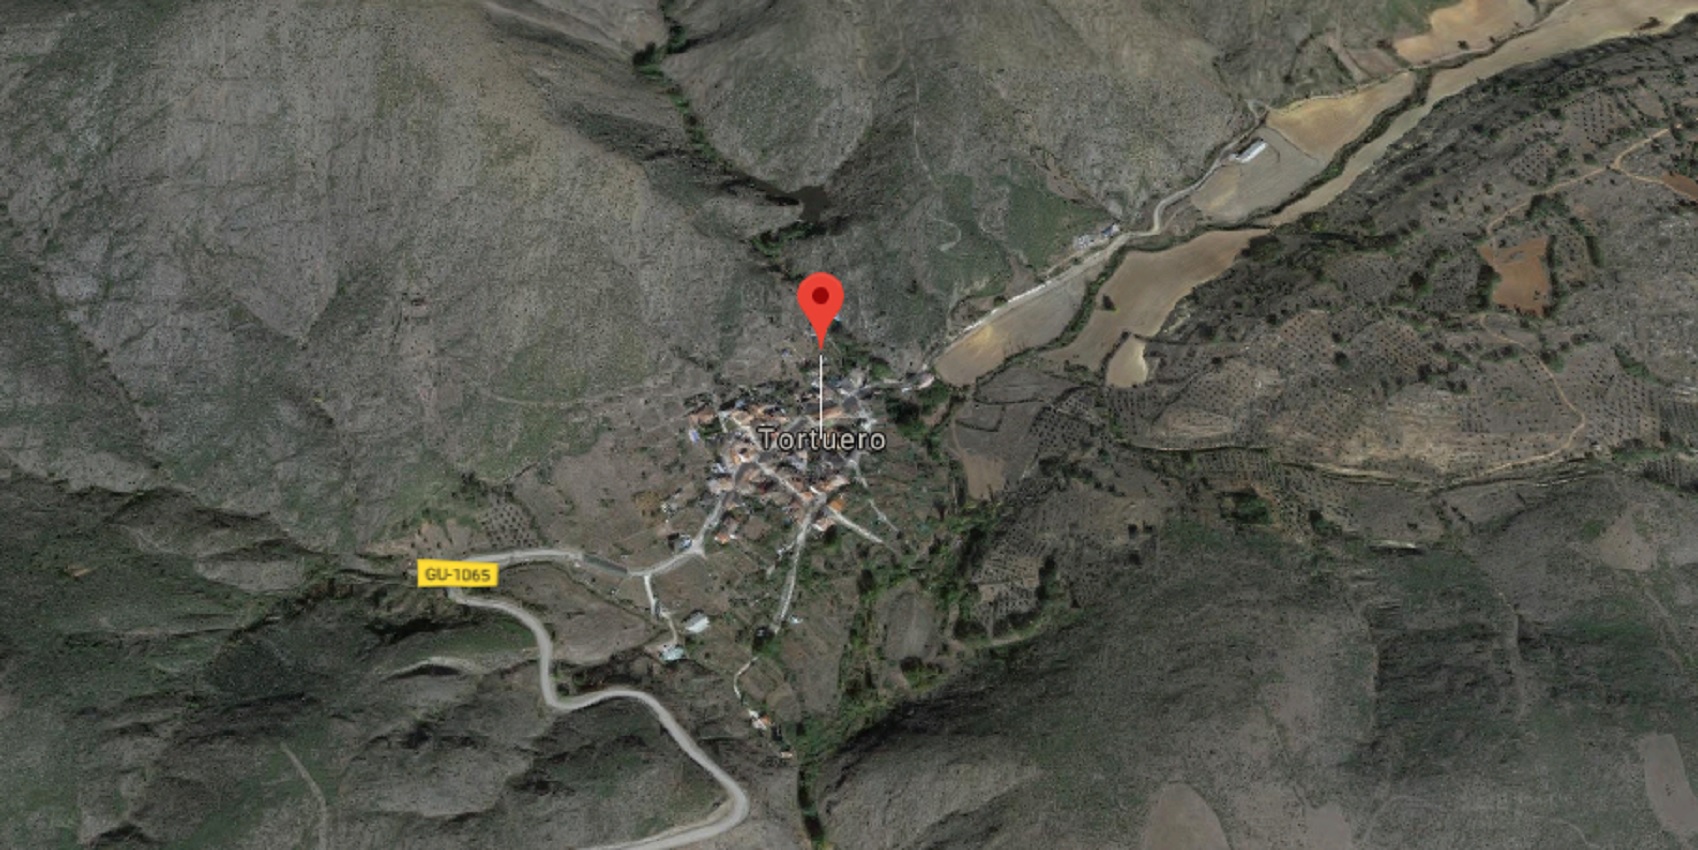 El accidente se ha producido en el Camino de la Hoz, en Tortuero.